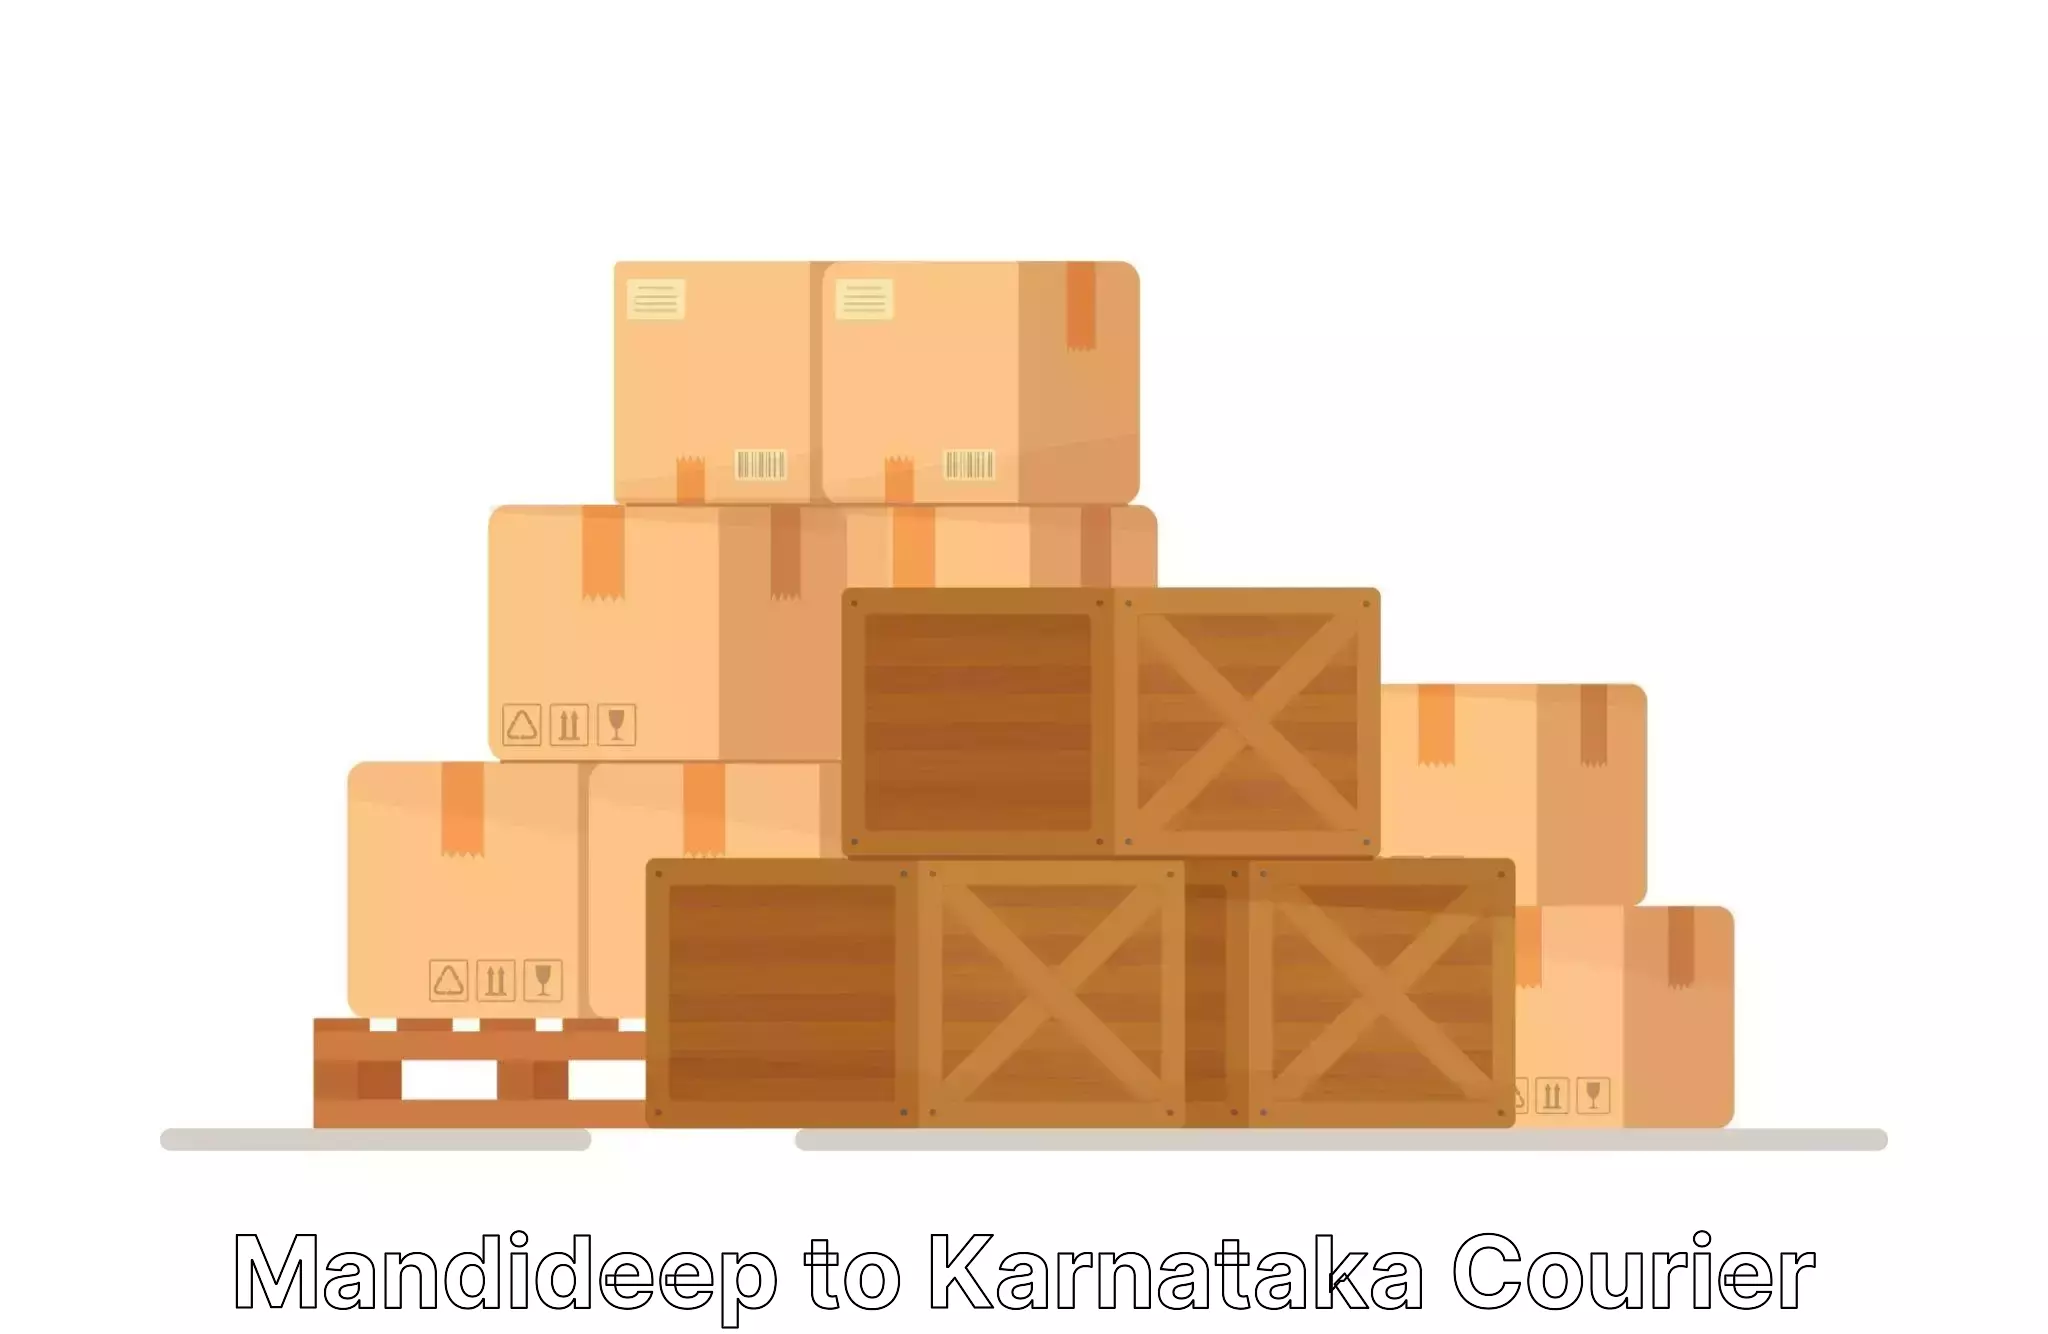 Home relocation experts Mandideep to Karnataka